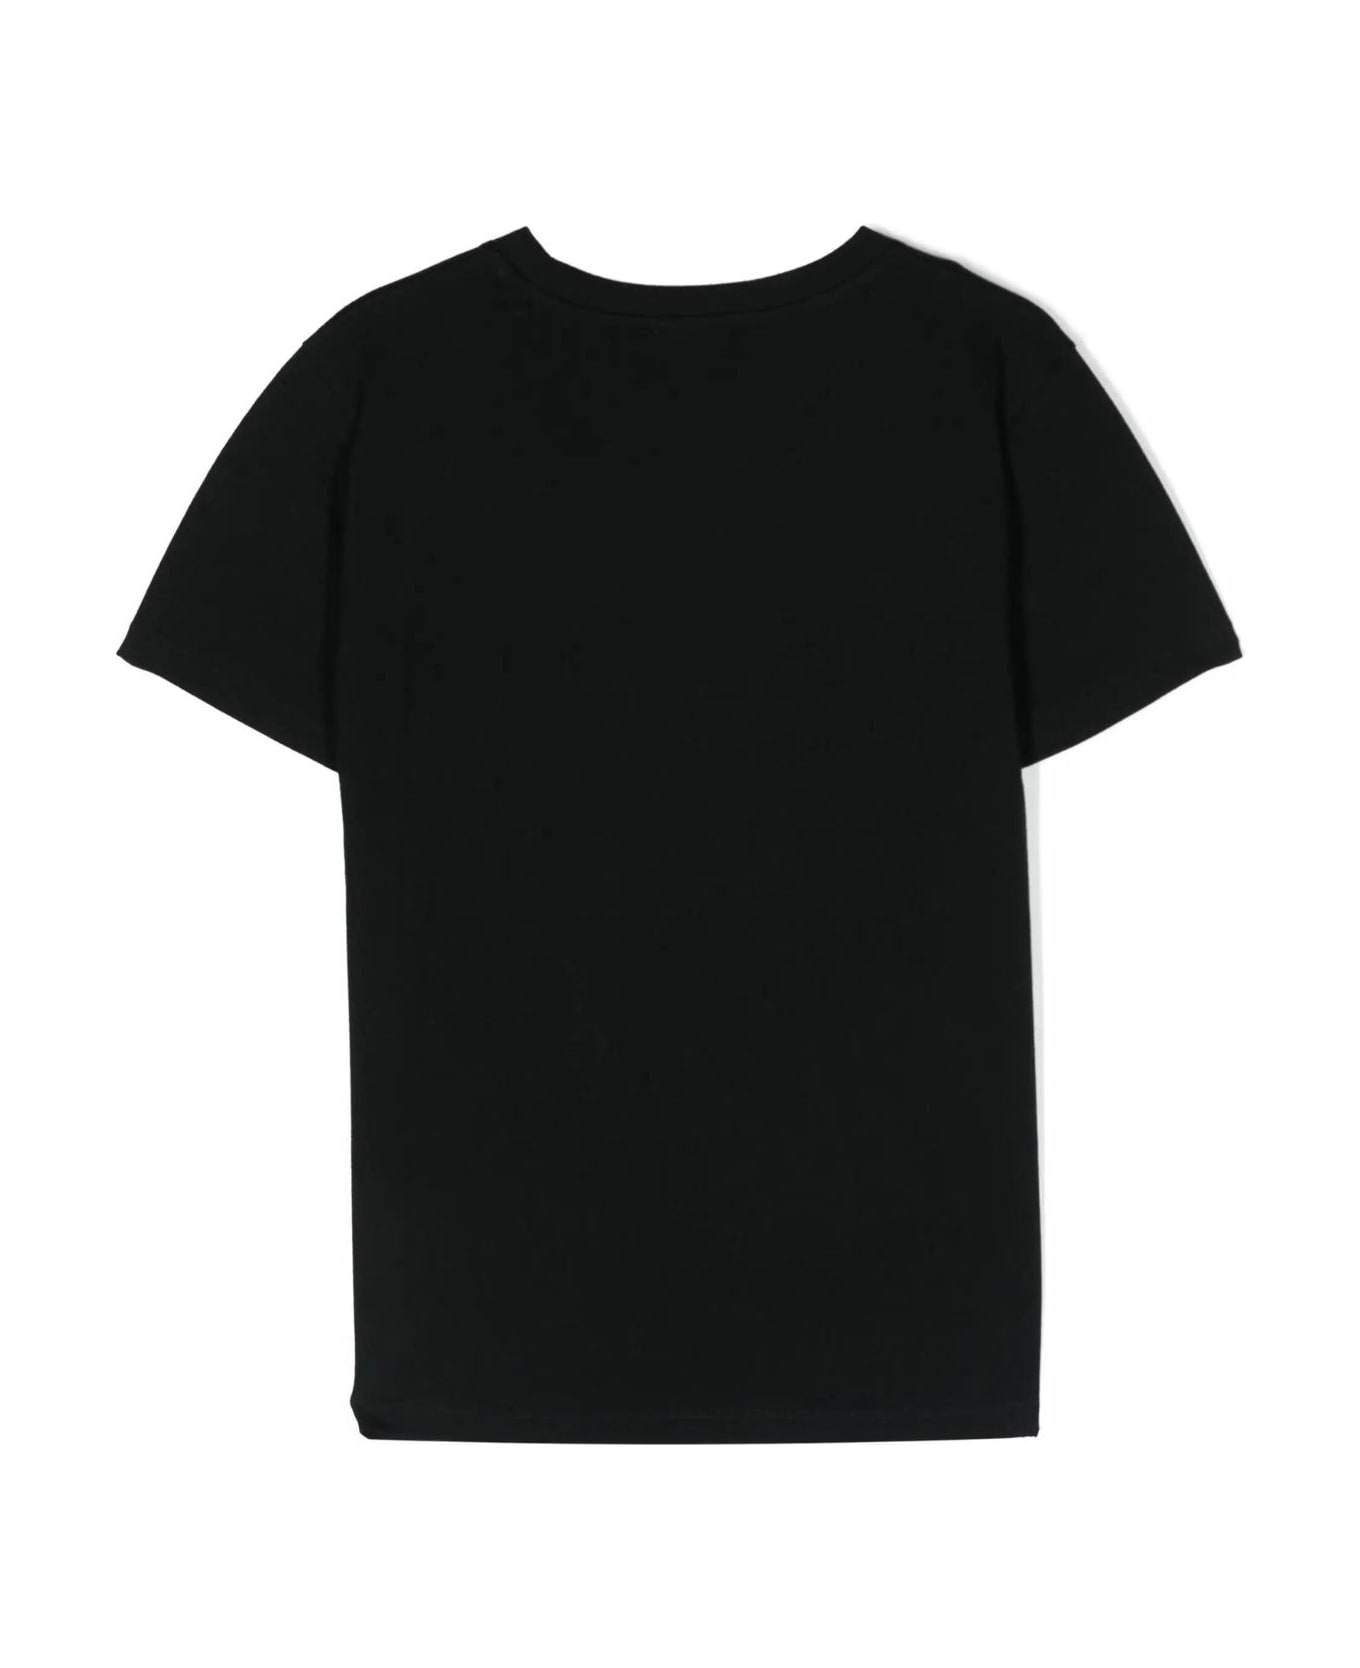 Balmain T Shirt - Ag Black Silver